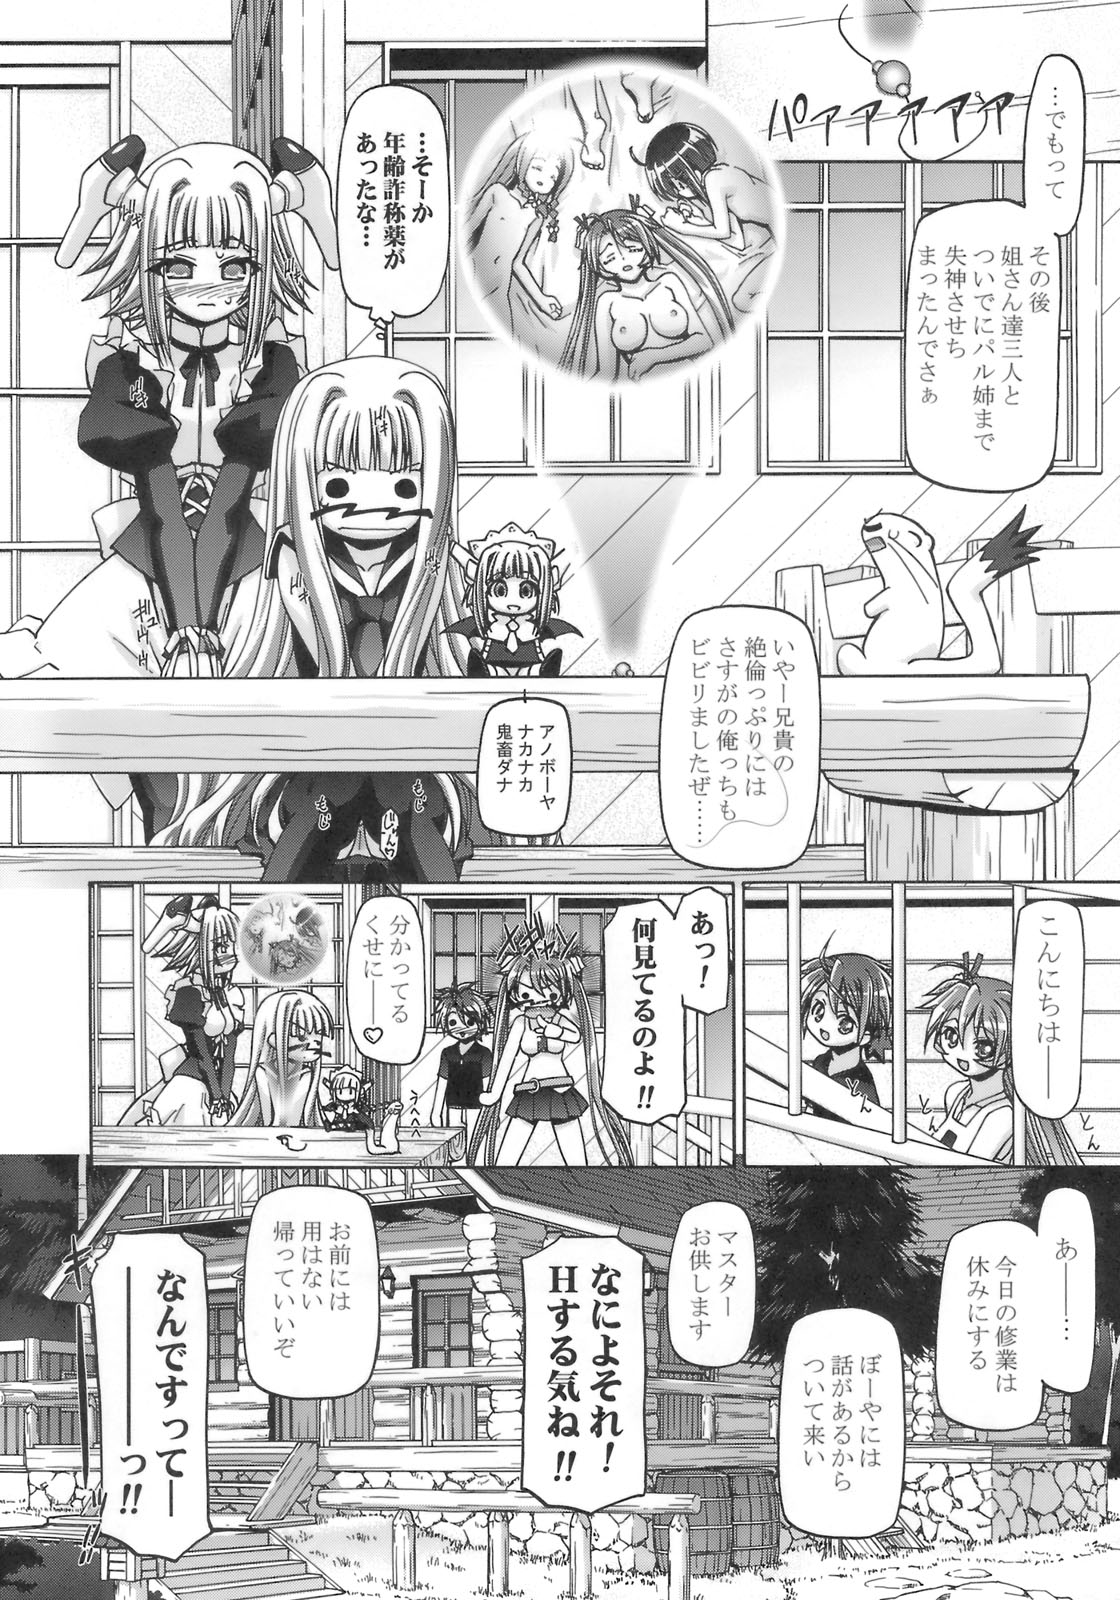 (SC39) [Gambler Club (Kousaka Jun)] Mahora Gakuen Tyuutoubu 3-A 3 Jikanme Negi X Haruna (Mahou Sensei Negima!) page 31 full